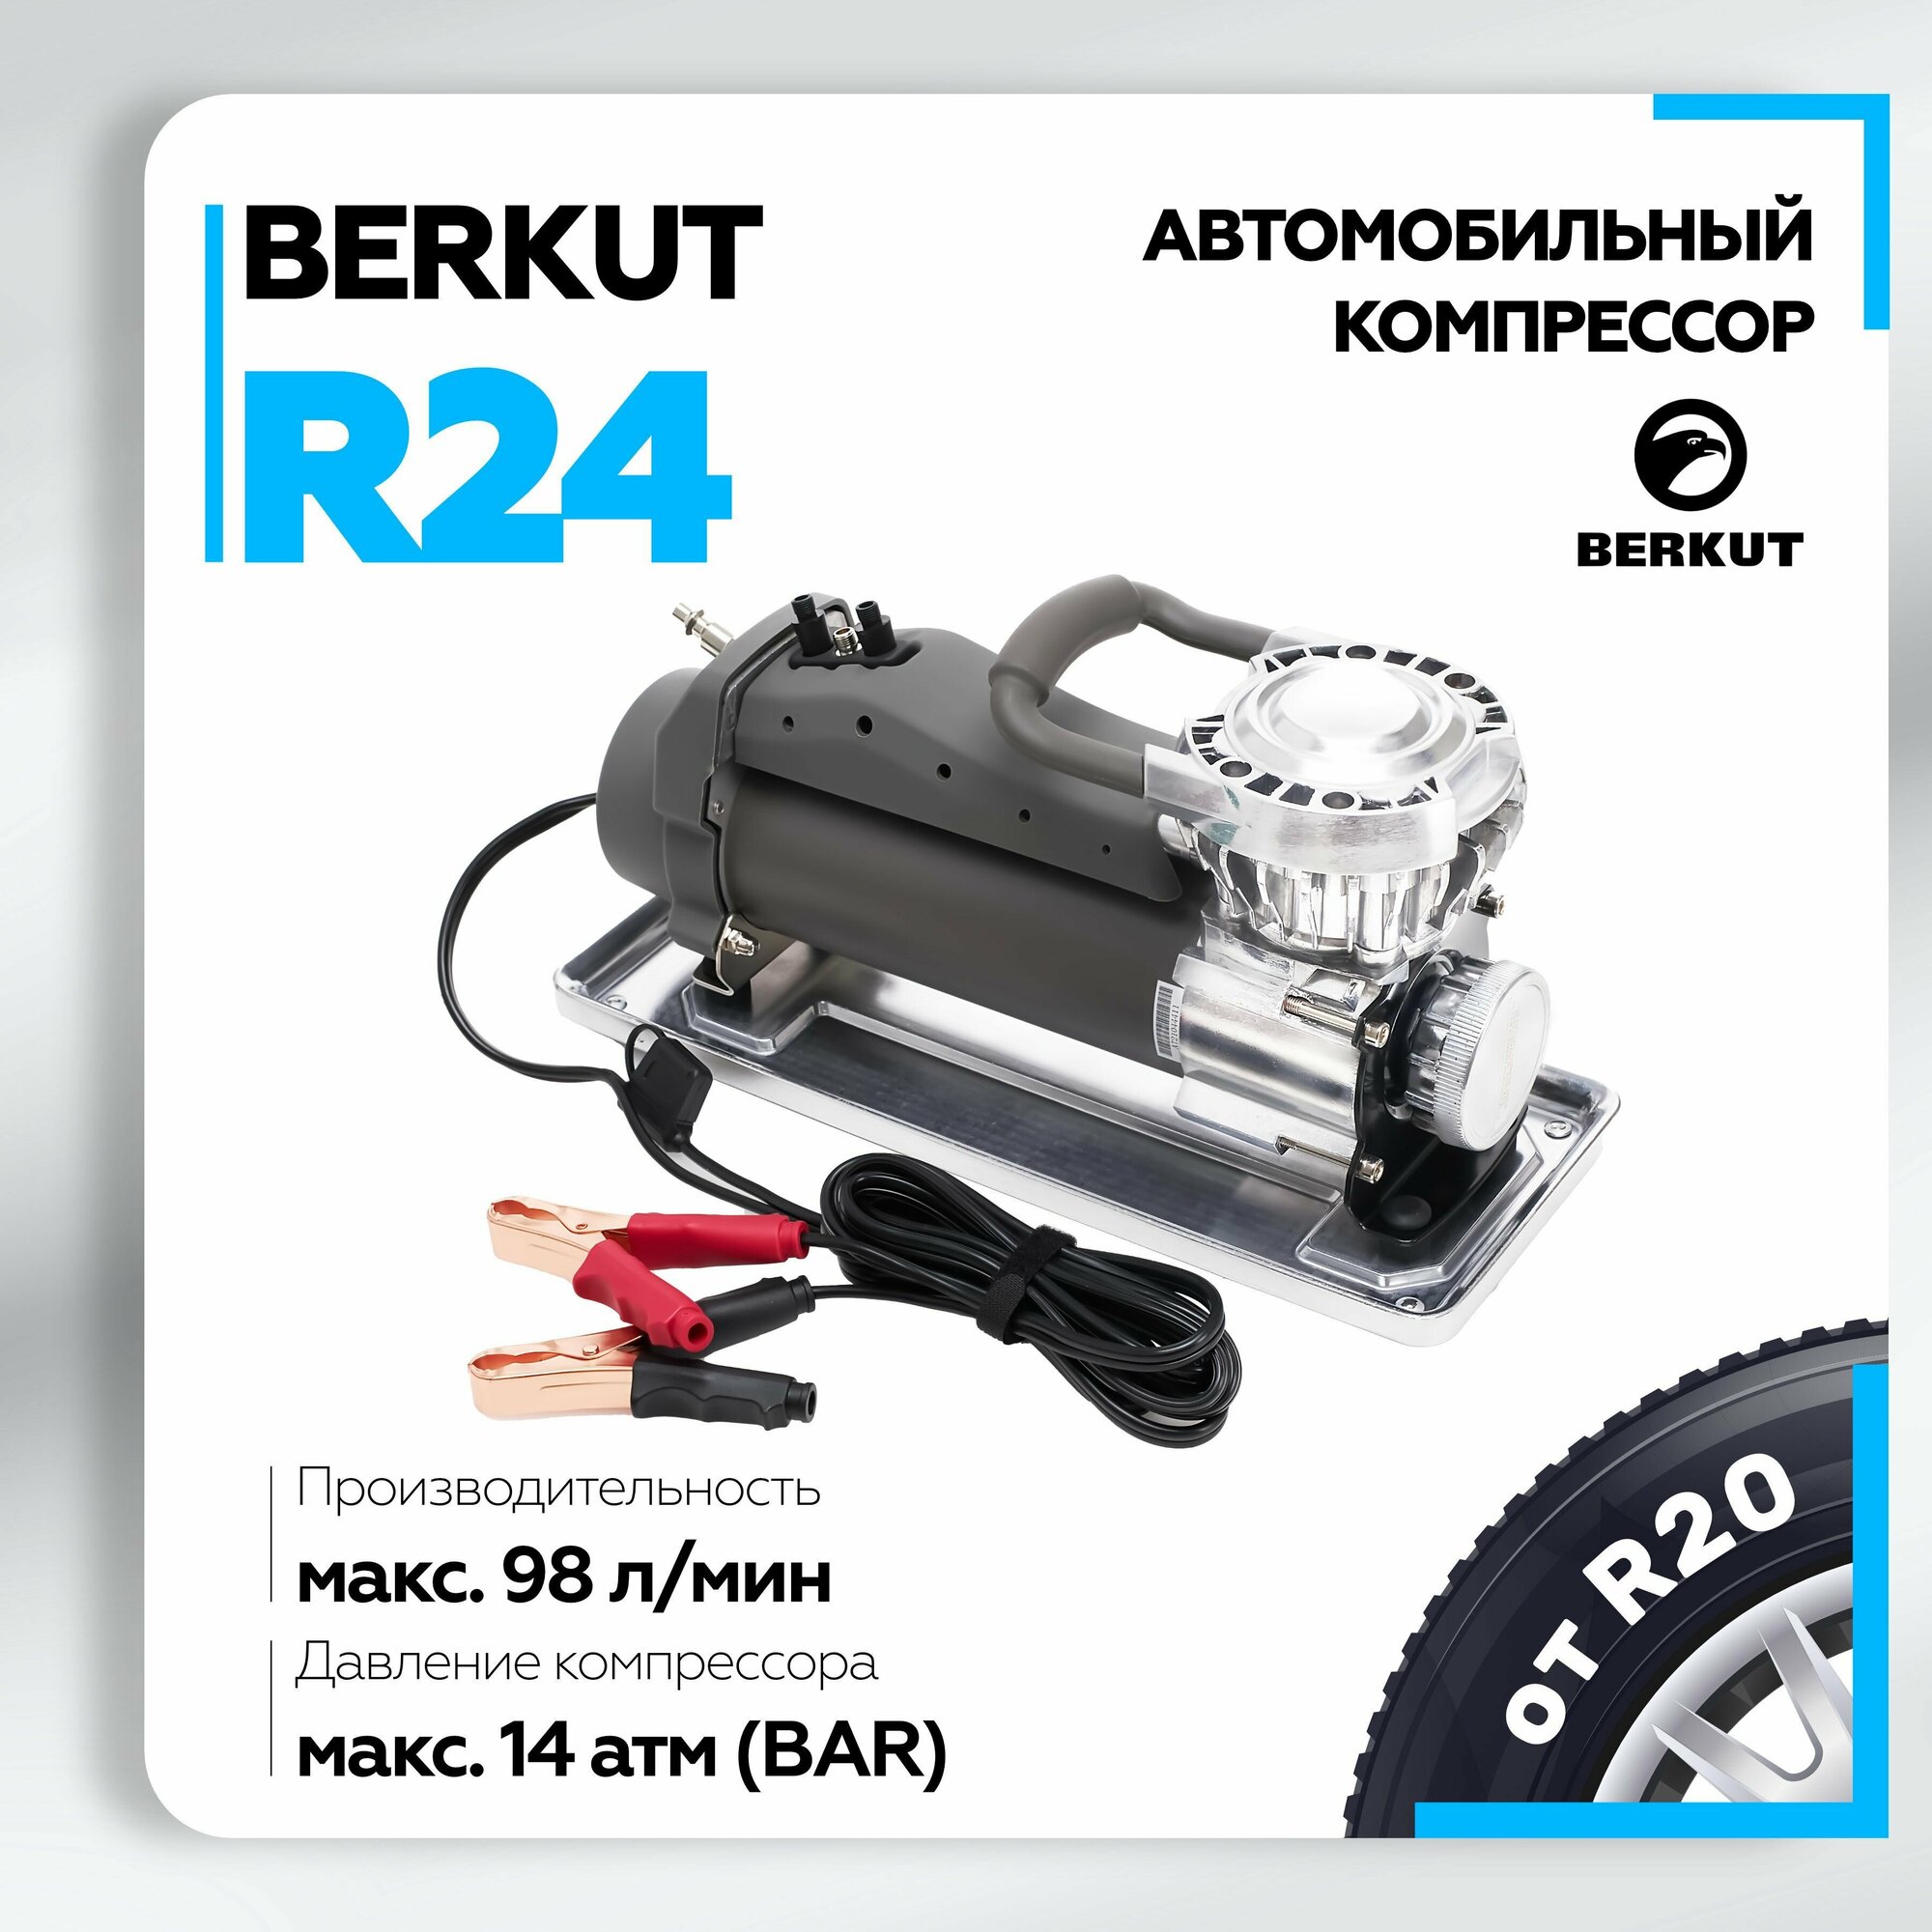 Автомобильный компрессор Berkut R24 98 л/мин. 14 BAR, 12в, 420вт, с набором насадок и переходников